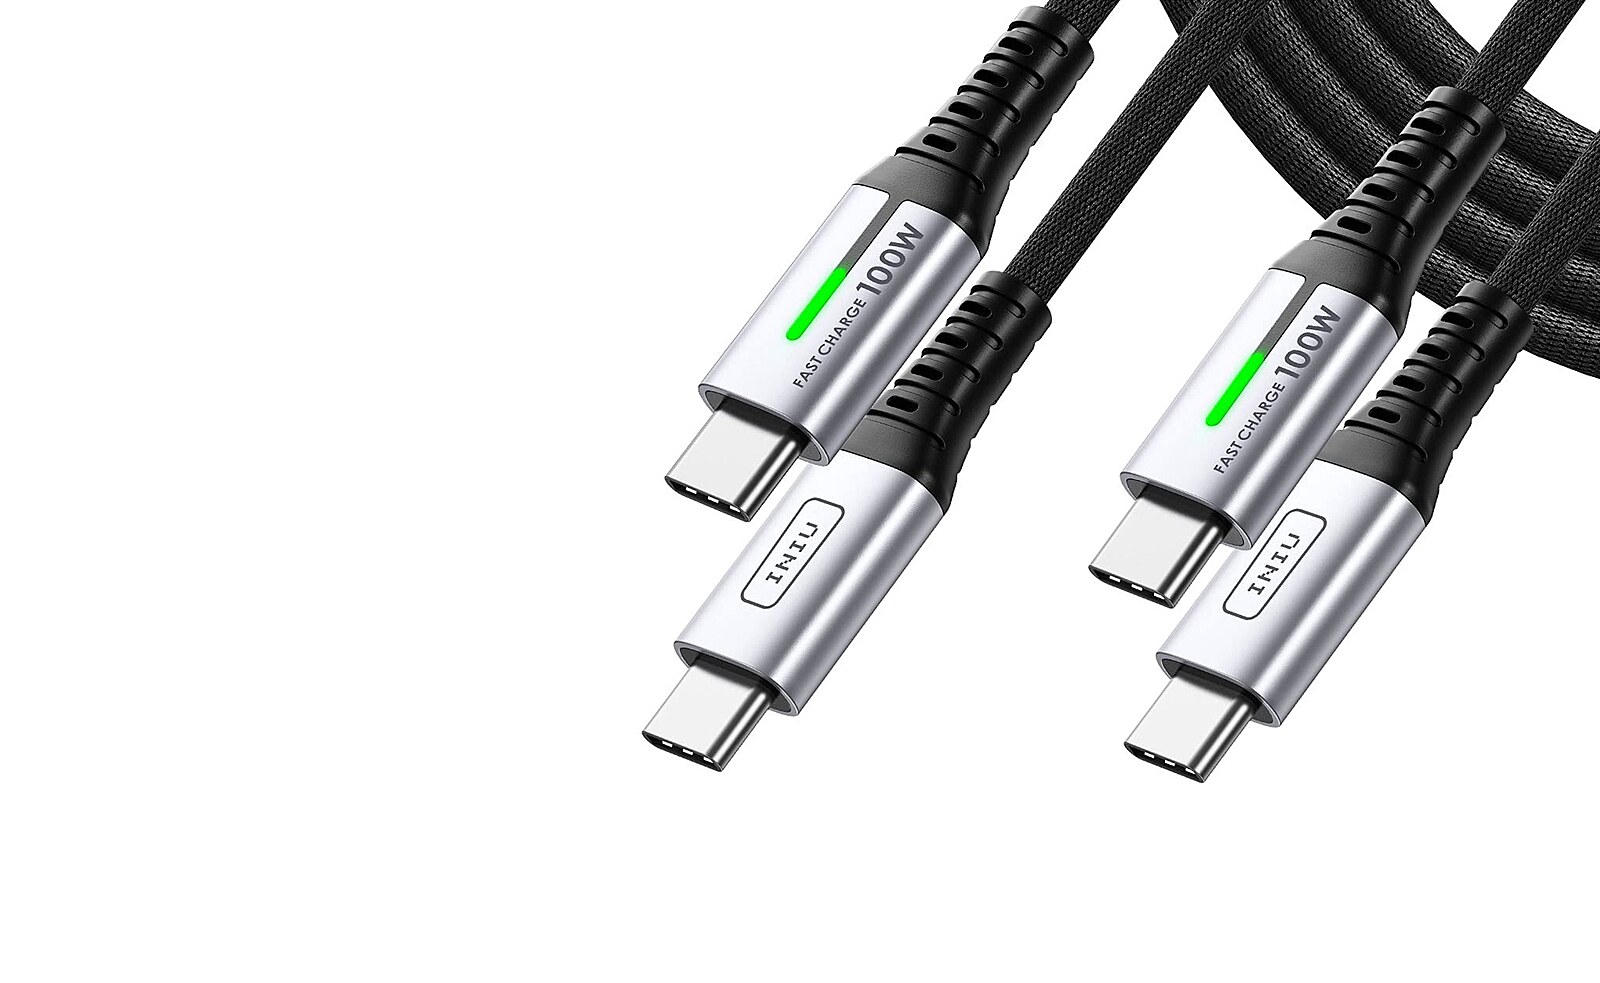 USB-C kabel vládne všem. Umíte poznat ten správný? - iDNES.cz